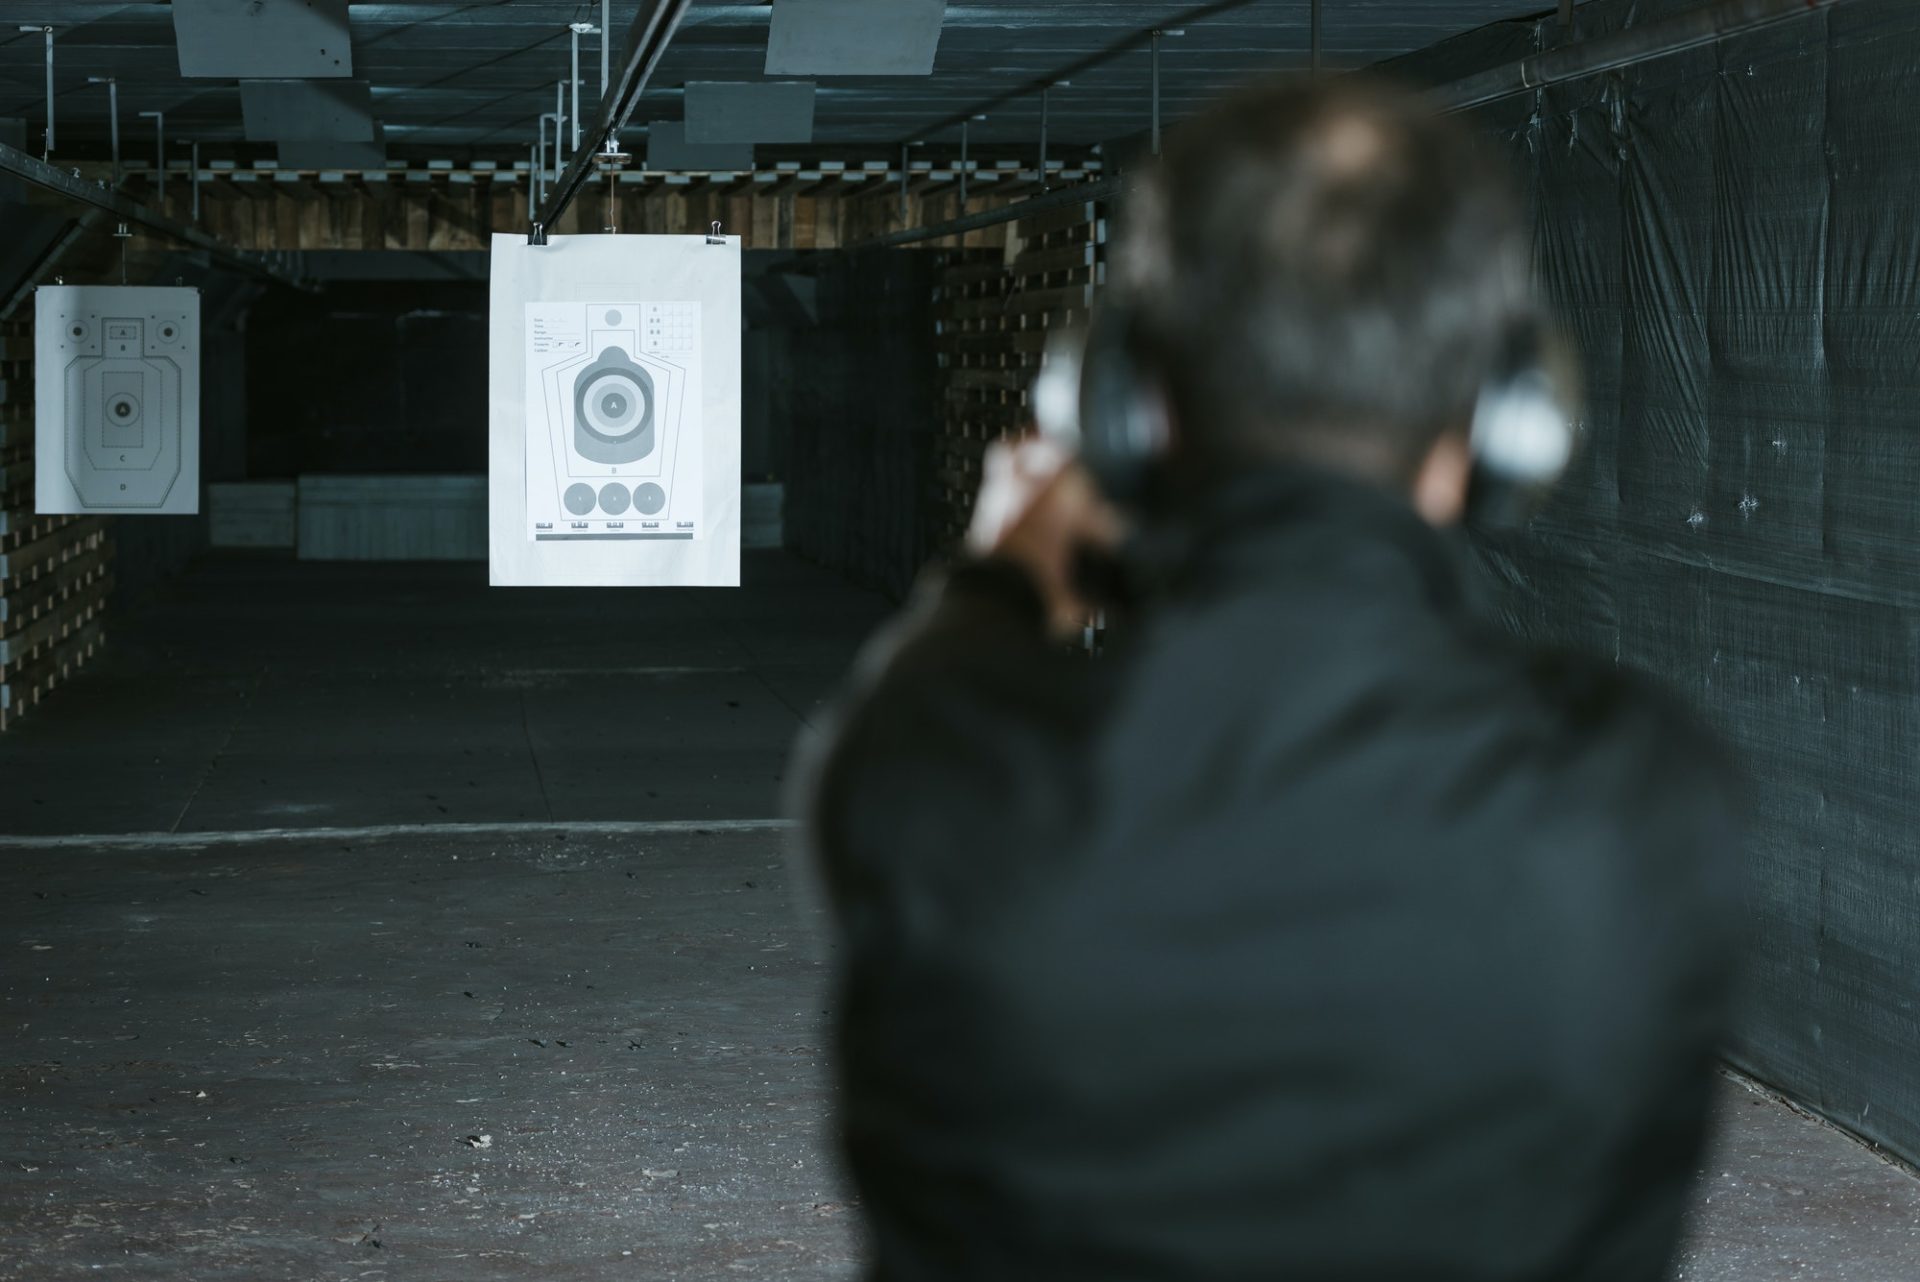 rear view of man aiming gun at target in shooting range